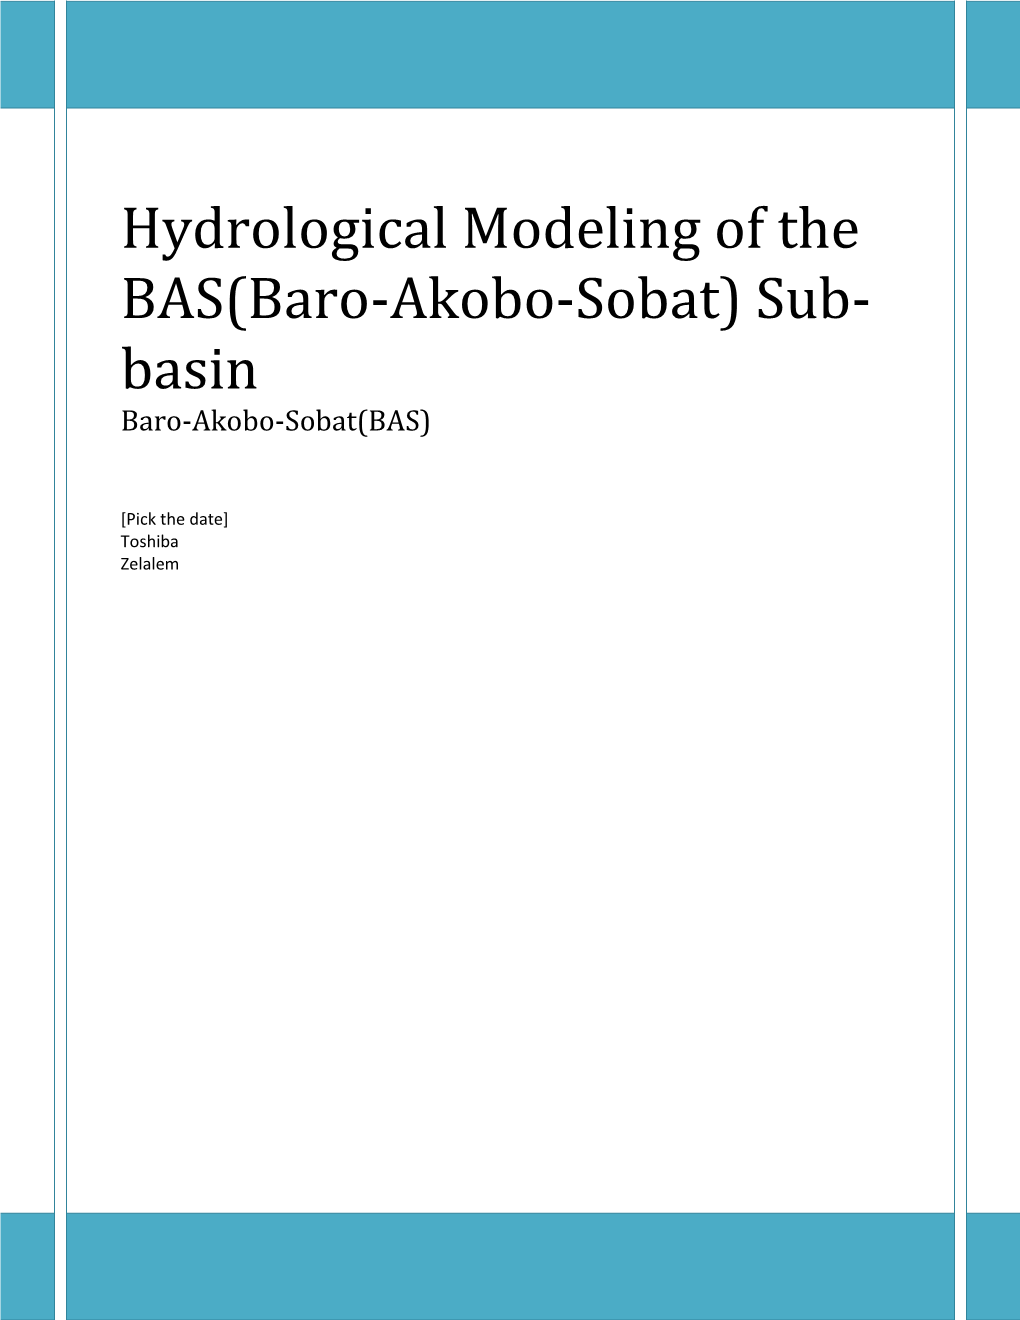 Hydrological Modeling of the BAS(Baro-Akobo-Sobat) Sub-Basin